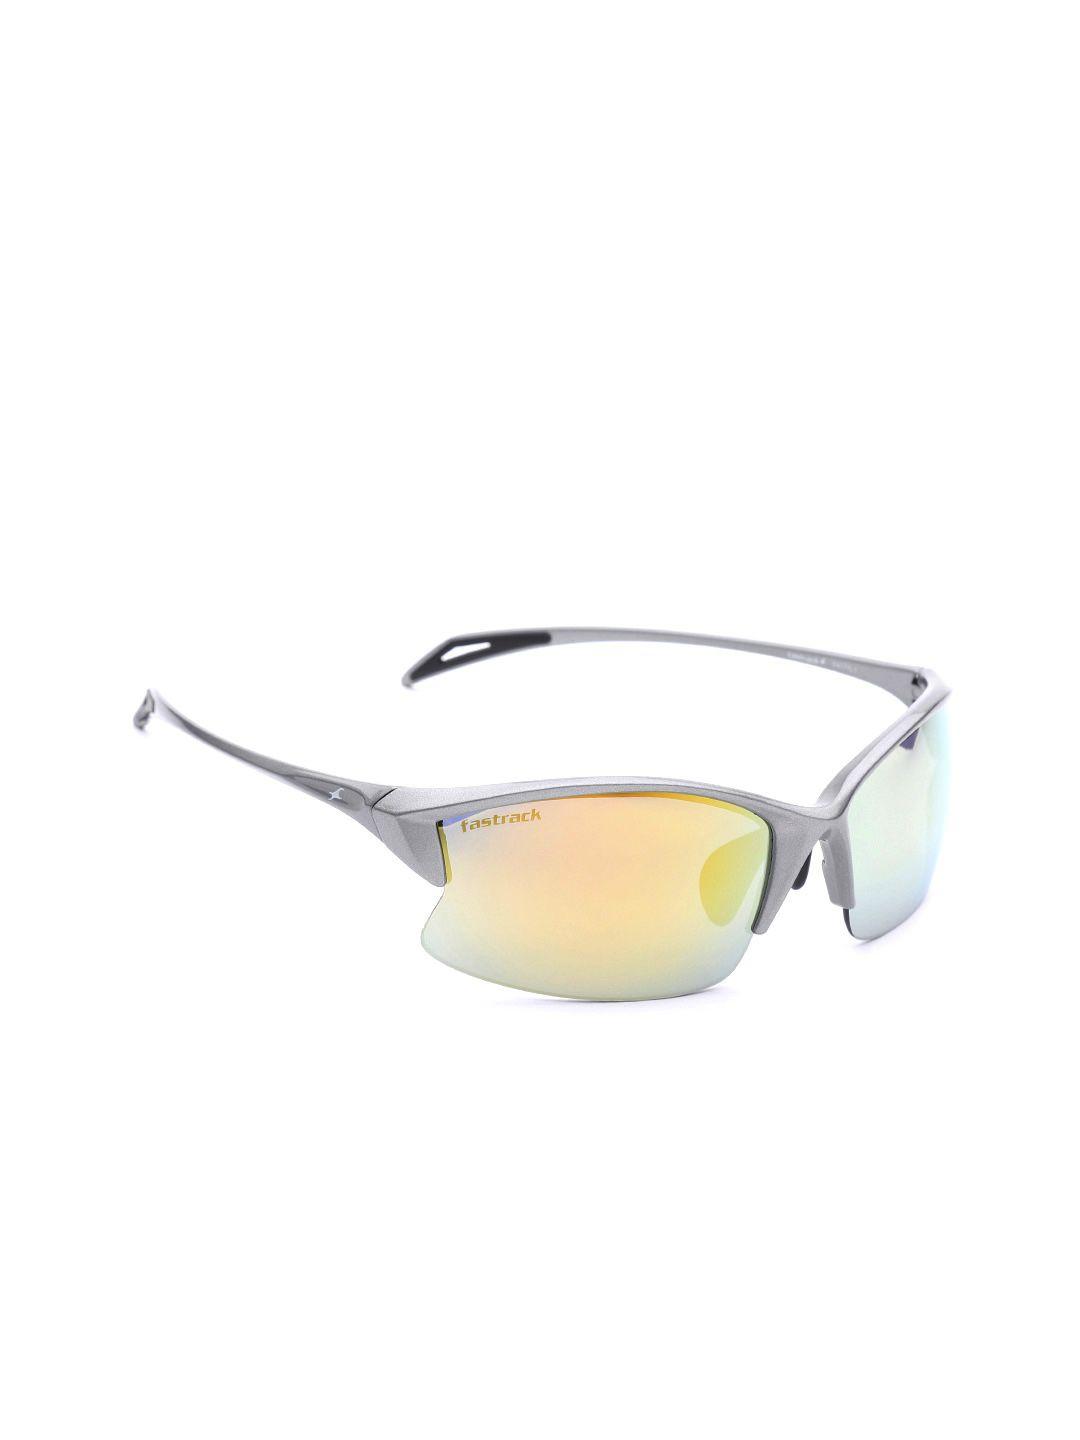 fastrack-men-mirrored-half-rim-sports-sunglasses-p417yl1